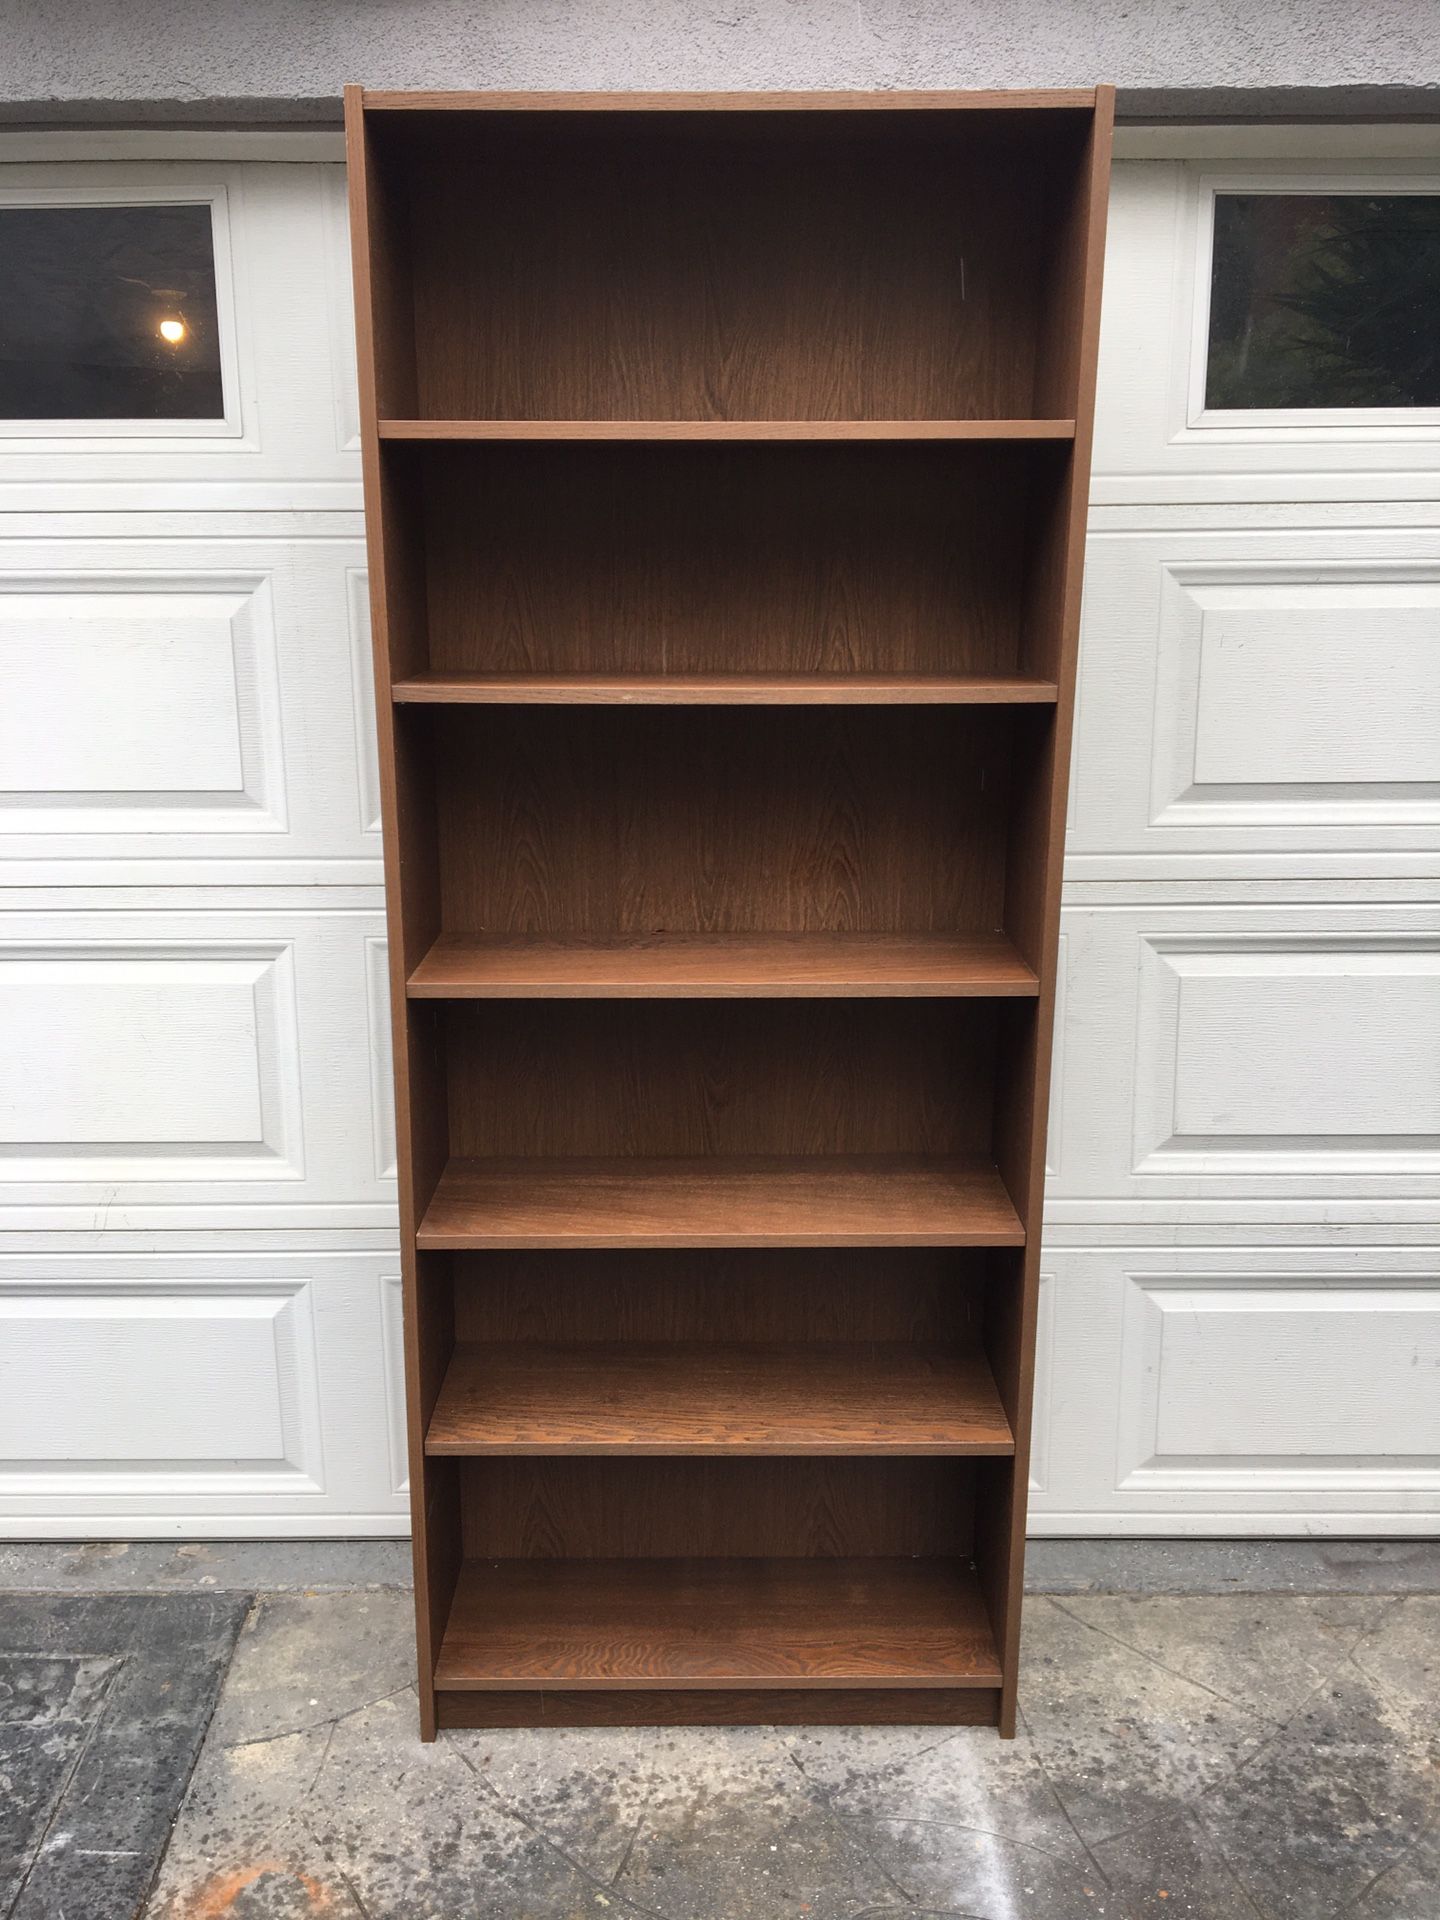 Premium wooden dark Oak melamine 6-layer shelves bookcase. Measurements 31 3/4 x 11 x 76